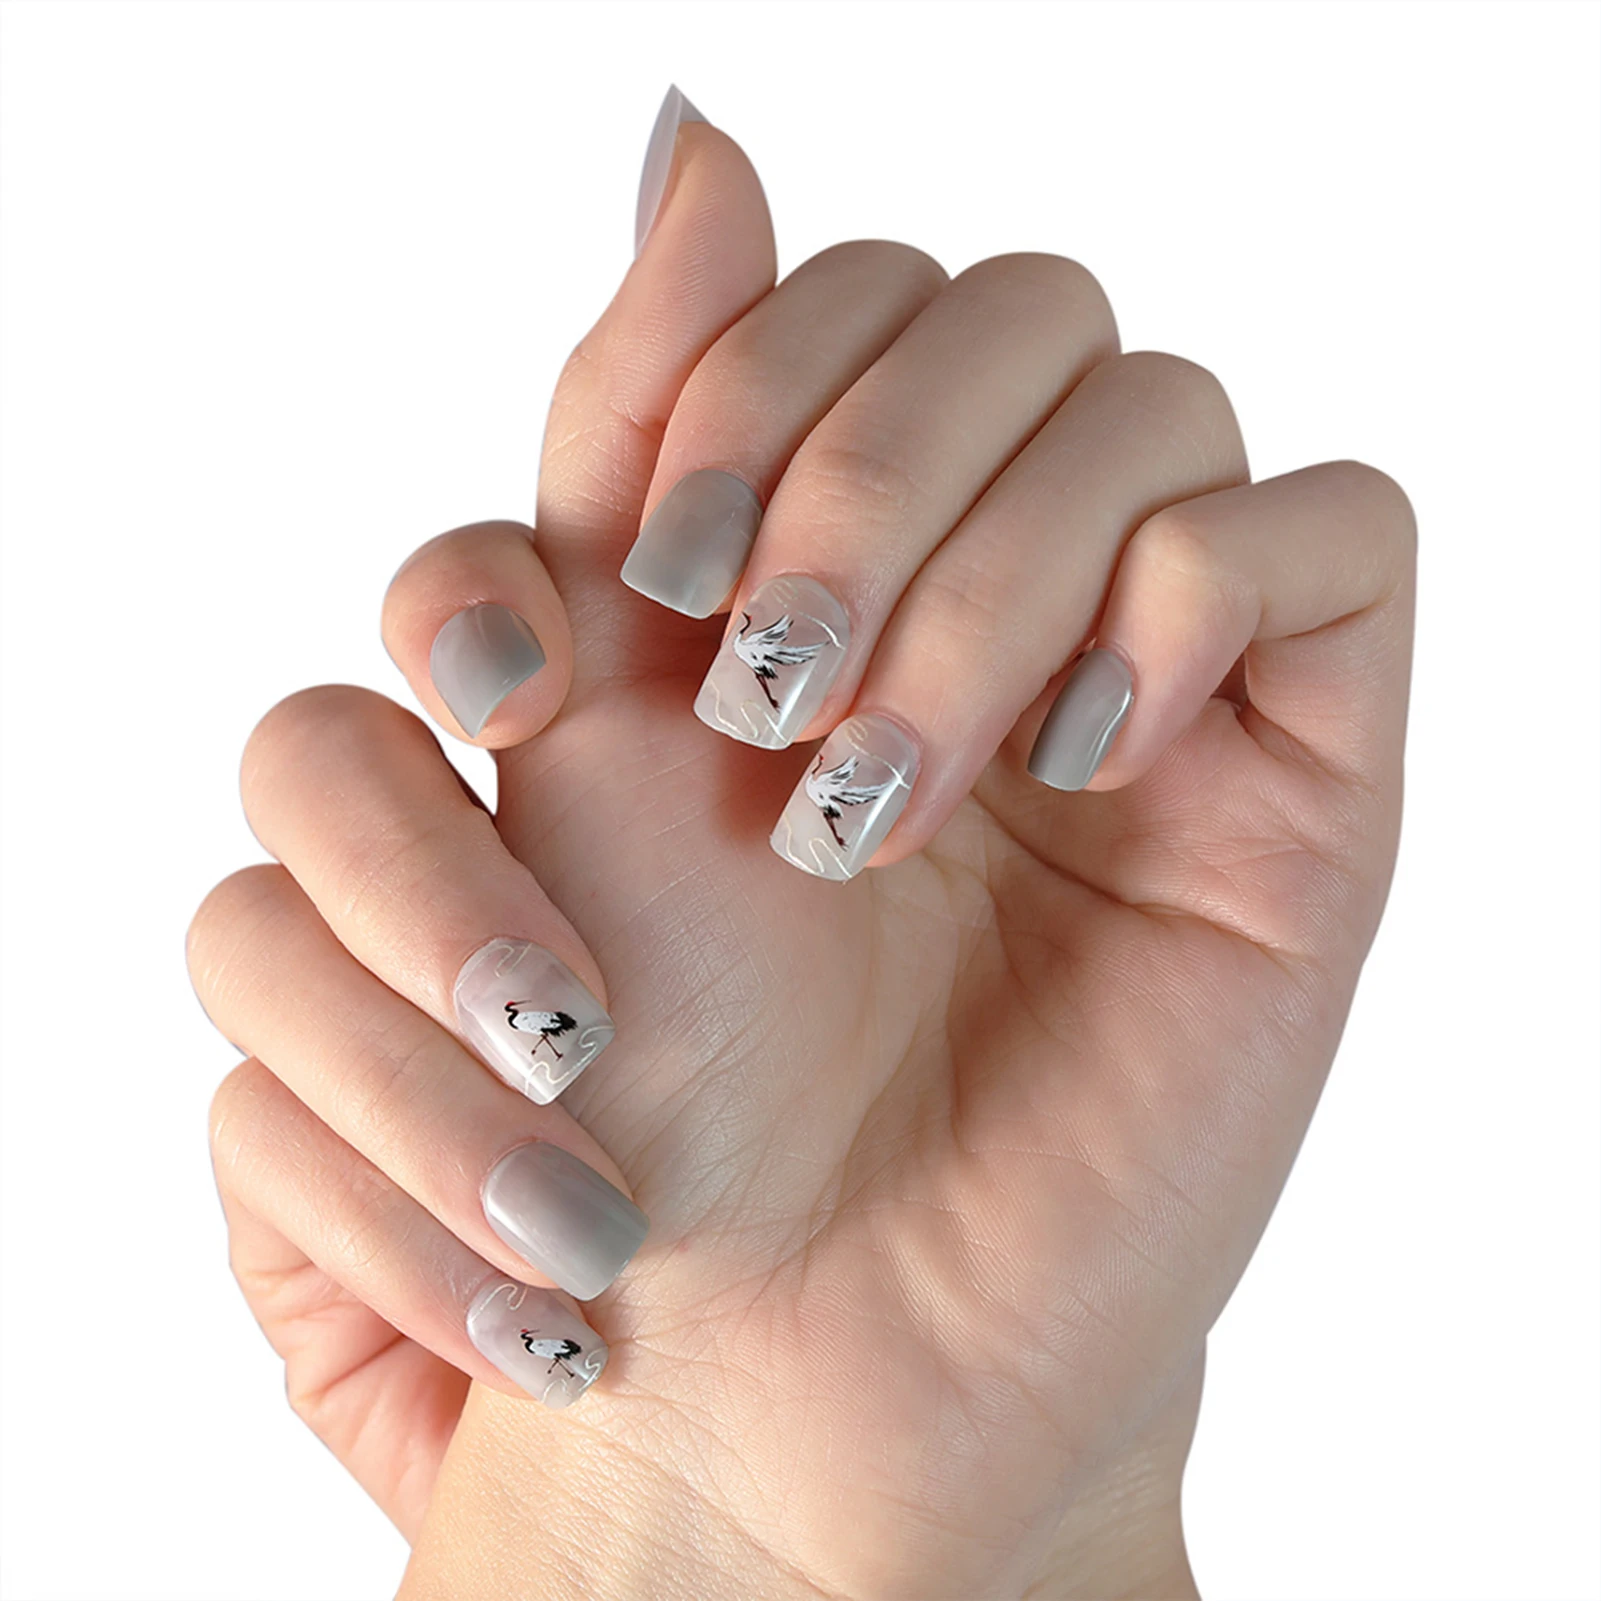 

24 шт длинный пресс на ногтях милые краны дизайн поддельные ногти полное покрытие ногти аксессуары для ногтей